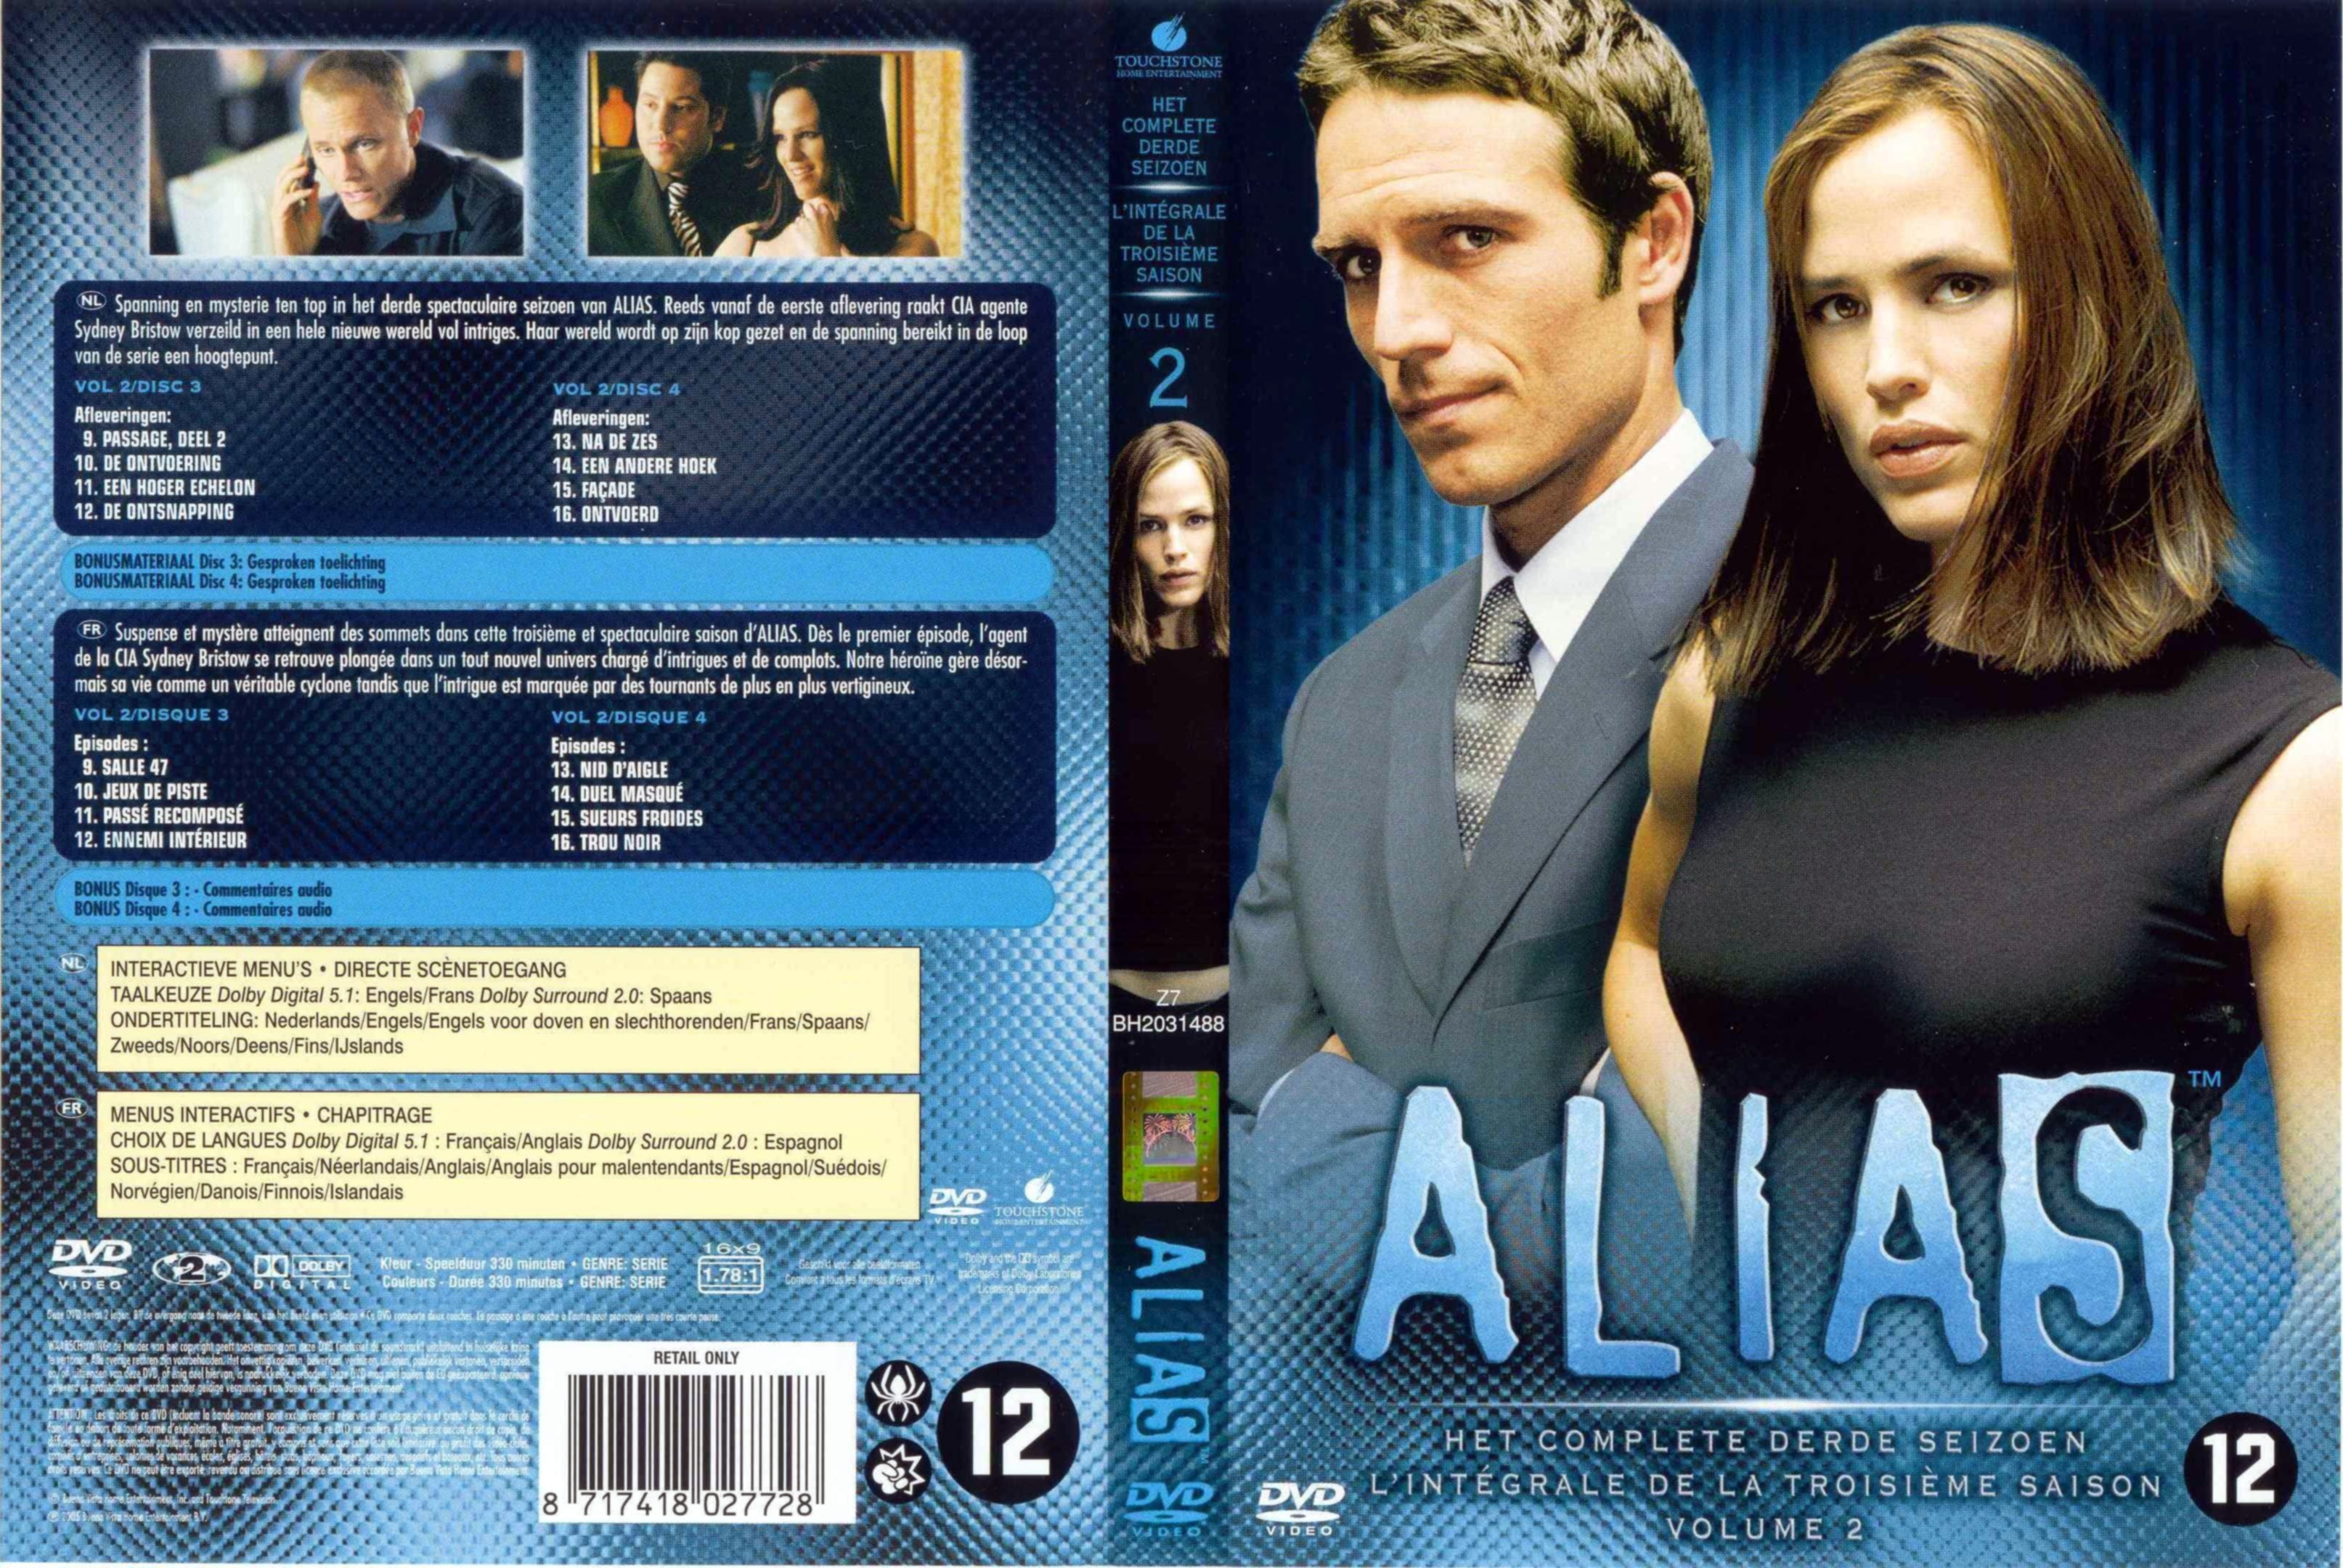 Jaquette DVD Alias saison 3 DVD 2